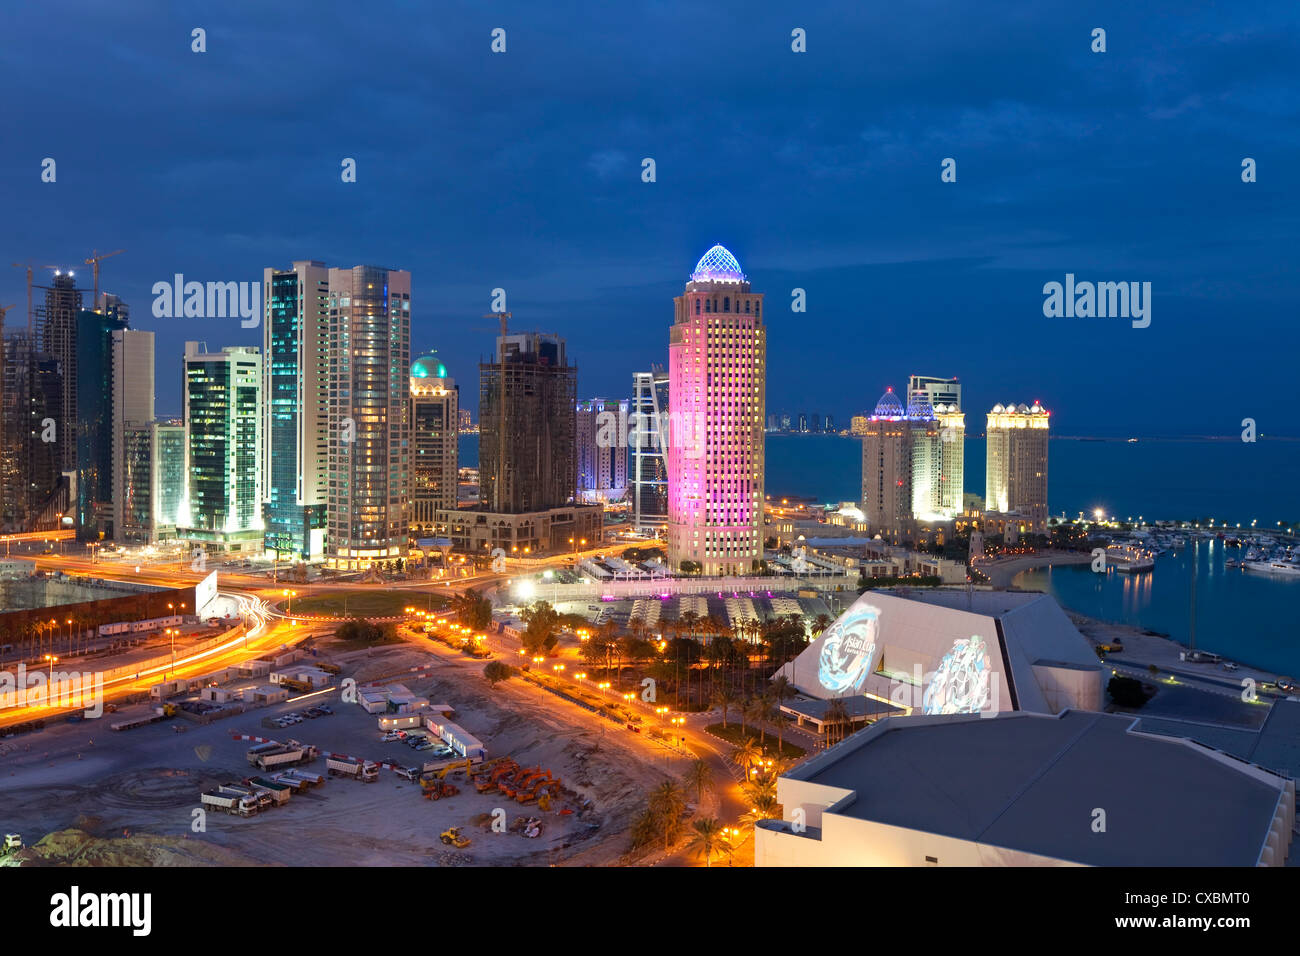 Nuevo skyline del distrito financiero central de West Bay, Doha, Qatar, Oriente Medio Foto de stock